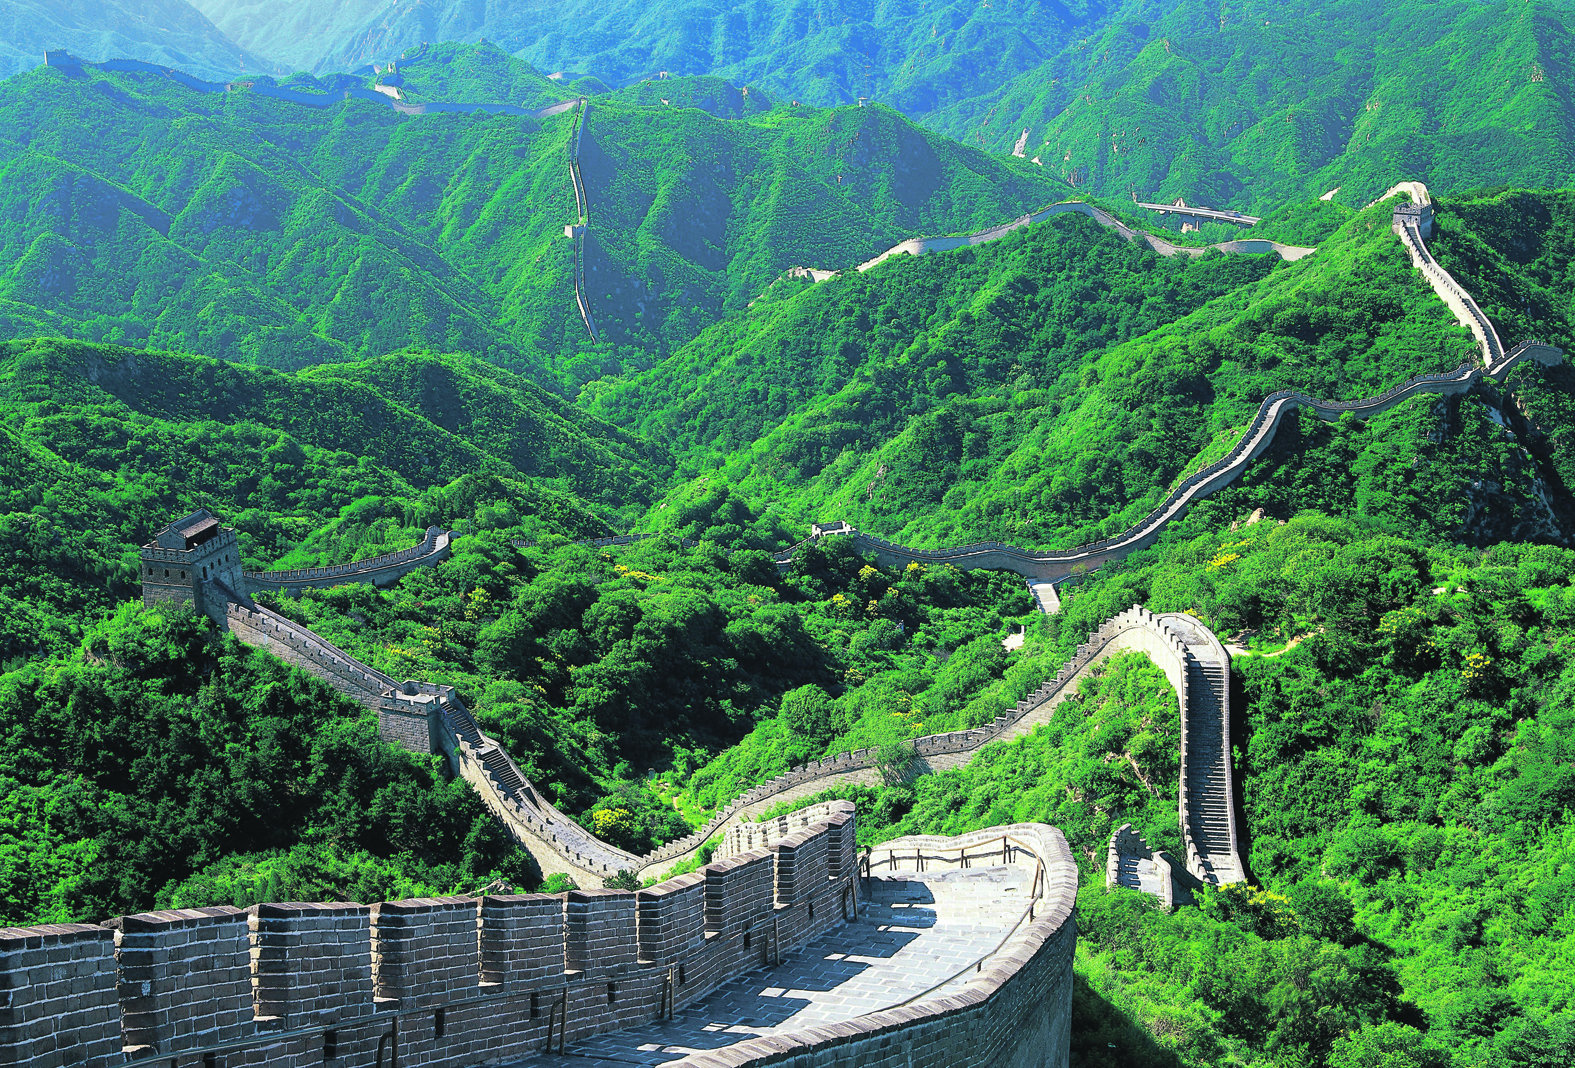 Továbbra is a nagy fal a legnépszerűbb látványosság Kínában